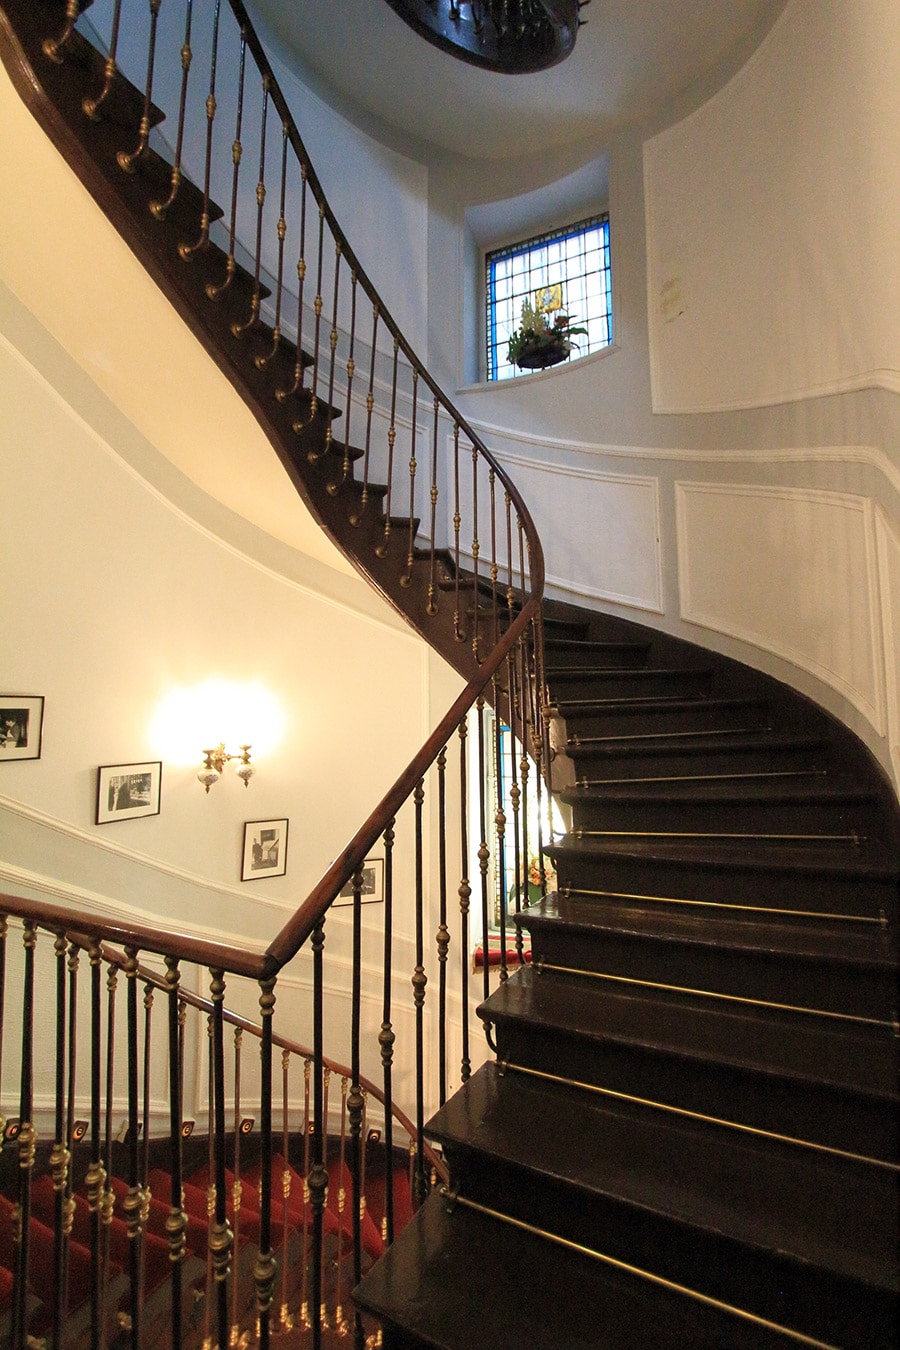 歴史を感じさせるらせん階段を上った2階にダイニングルームがある。